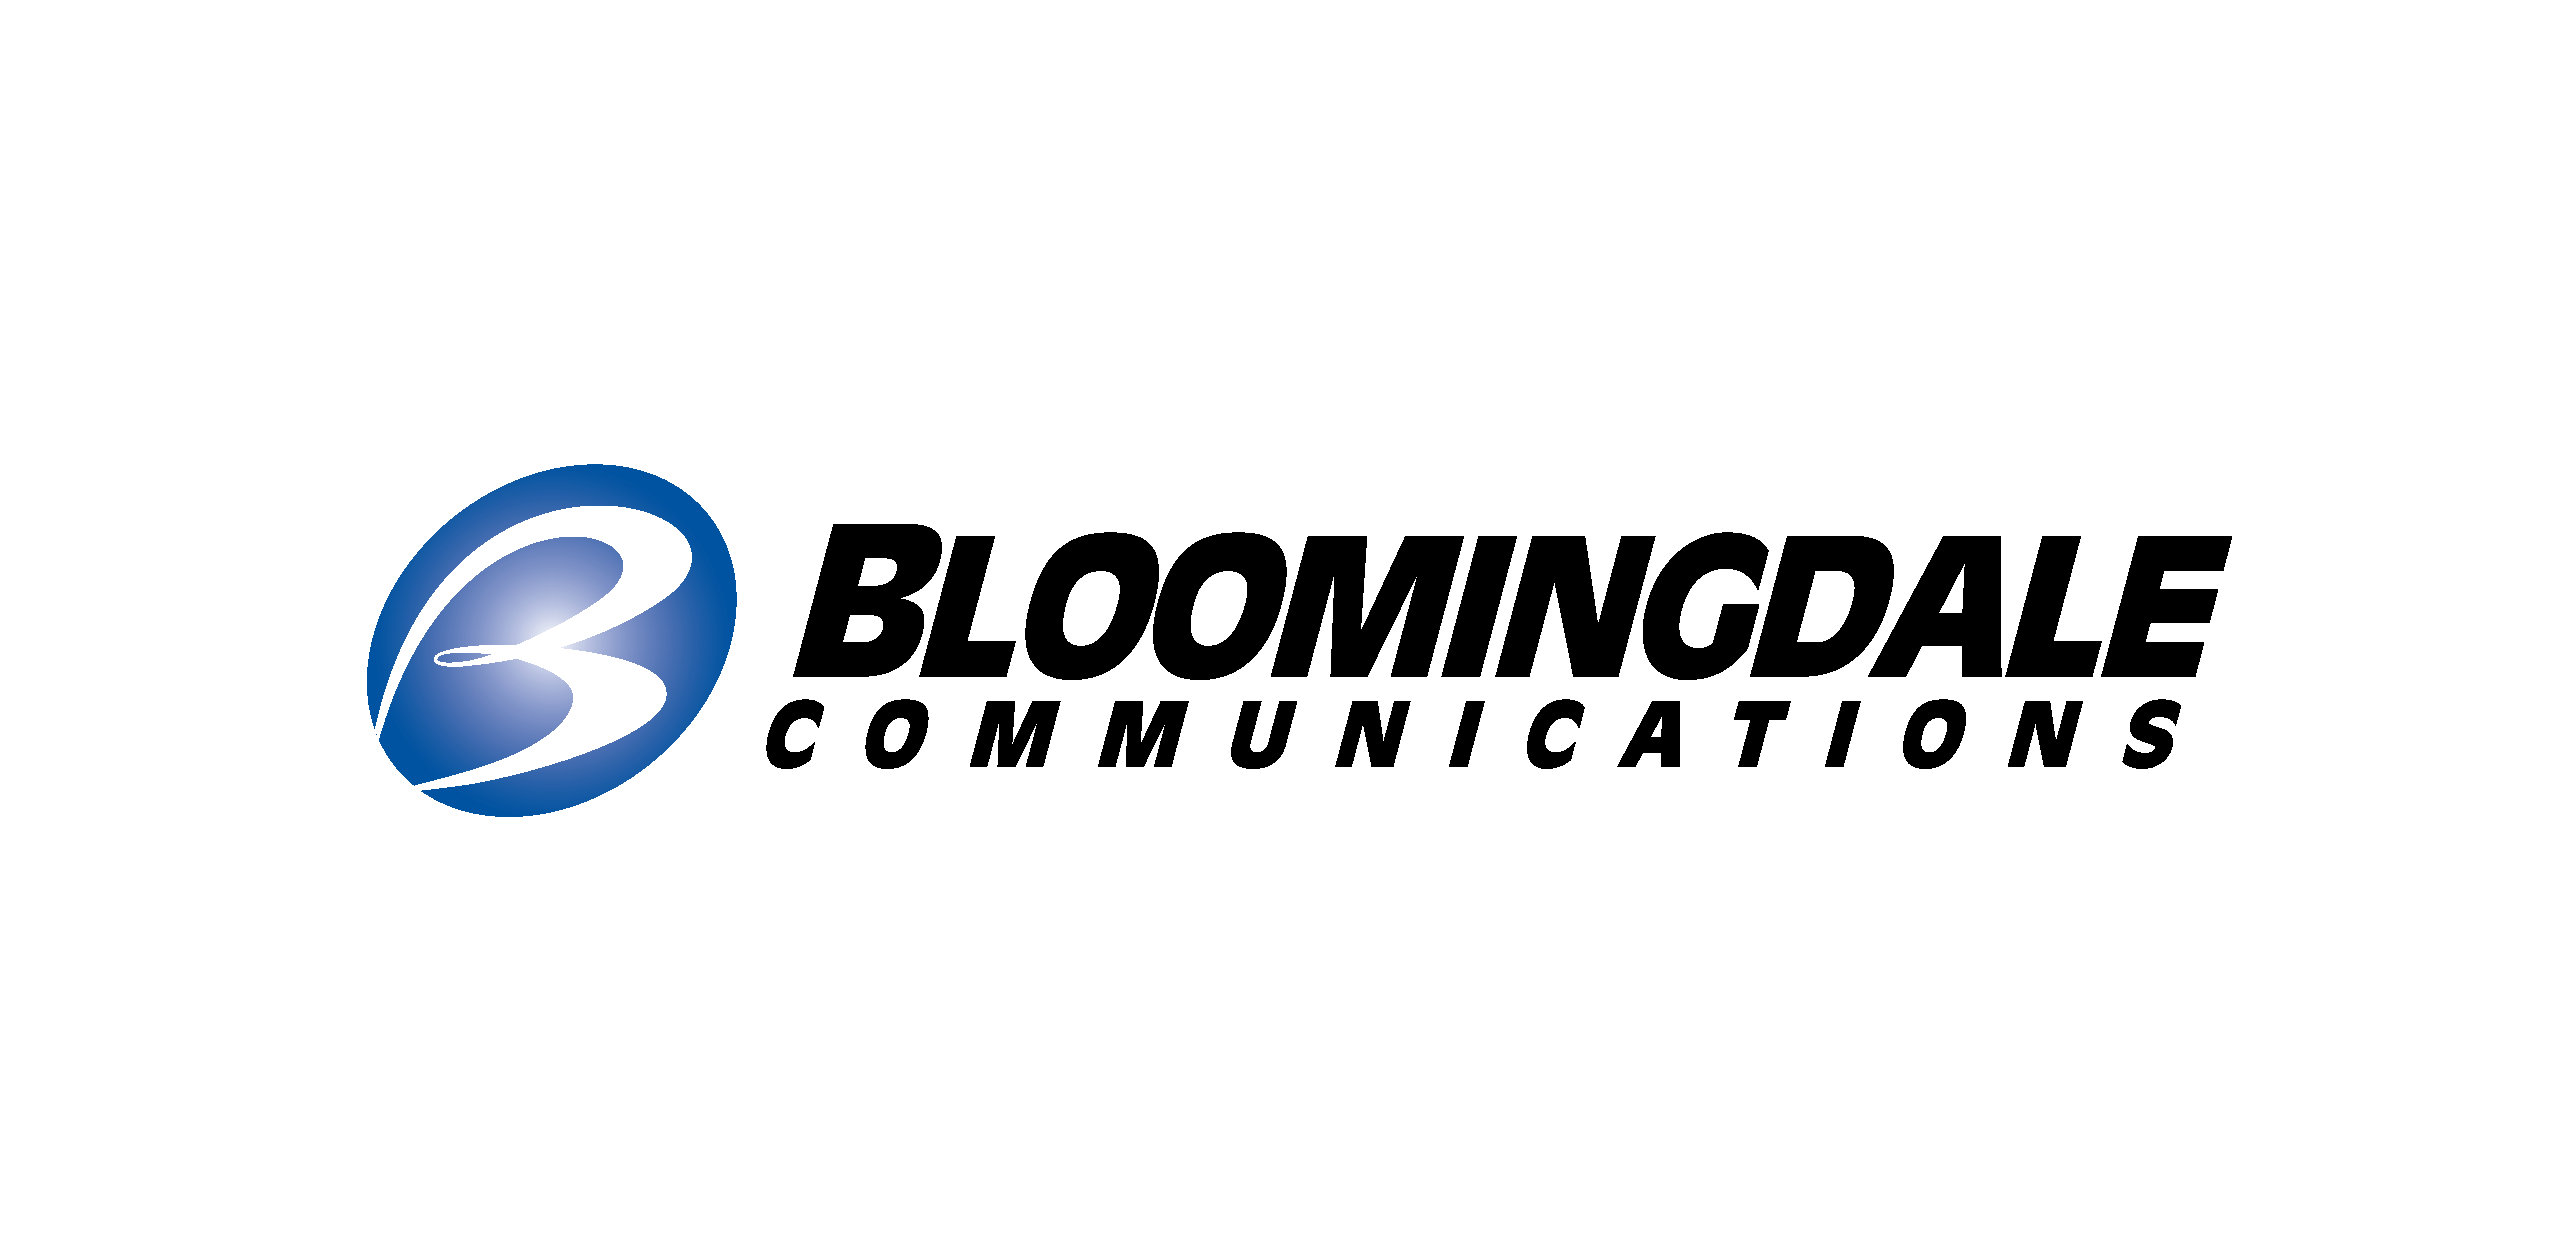 Bloomingdales Communications